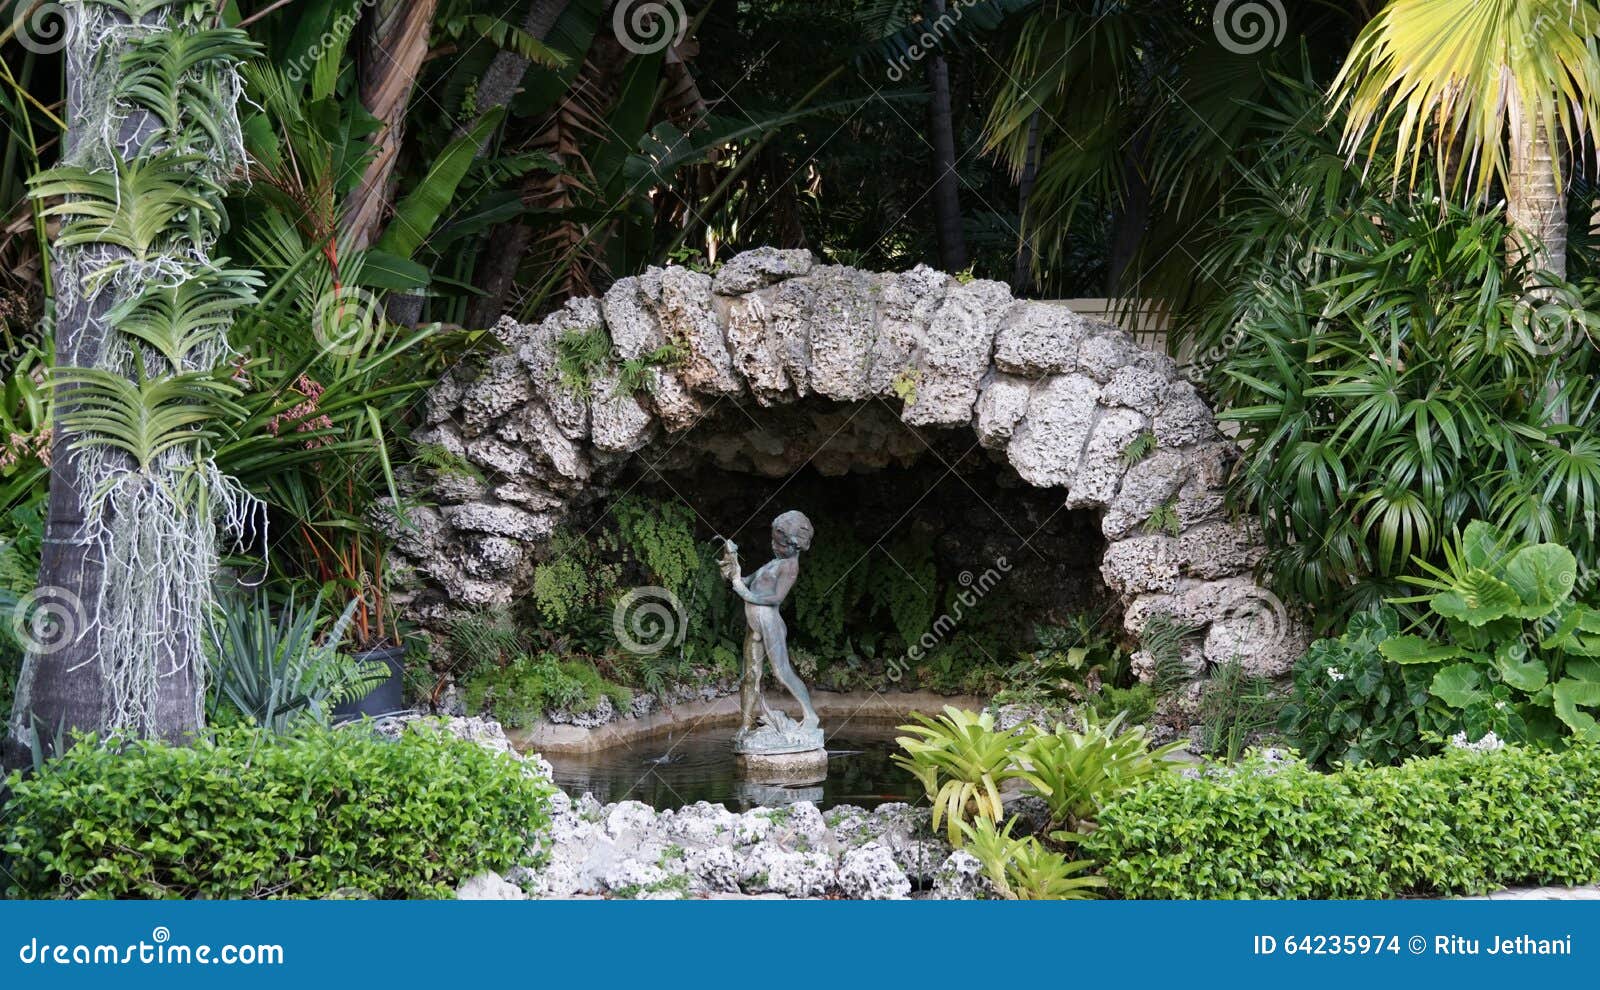 rock statuary, ann norton sculpture gardens, west palm beach, florida